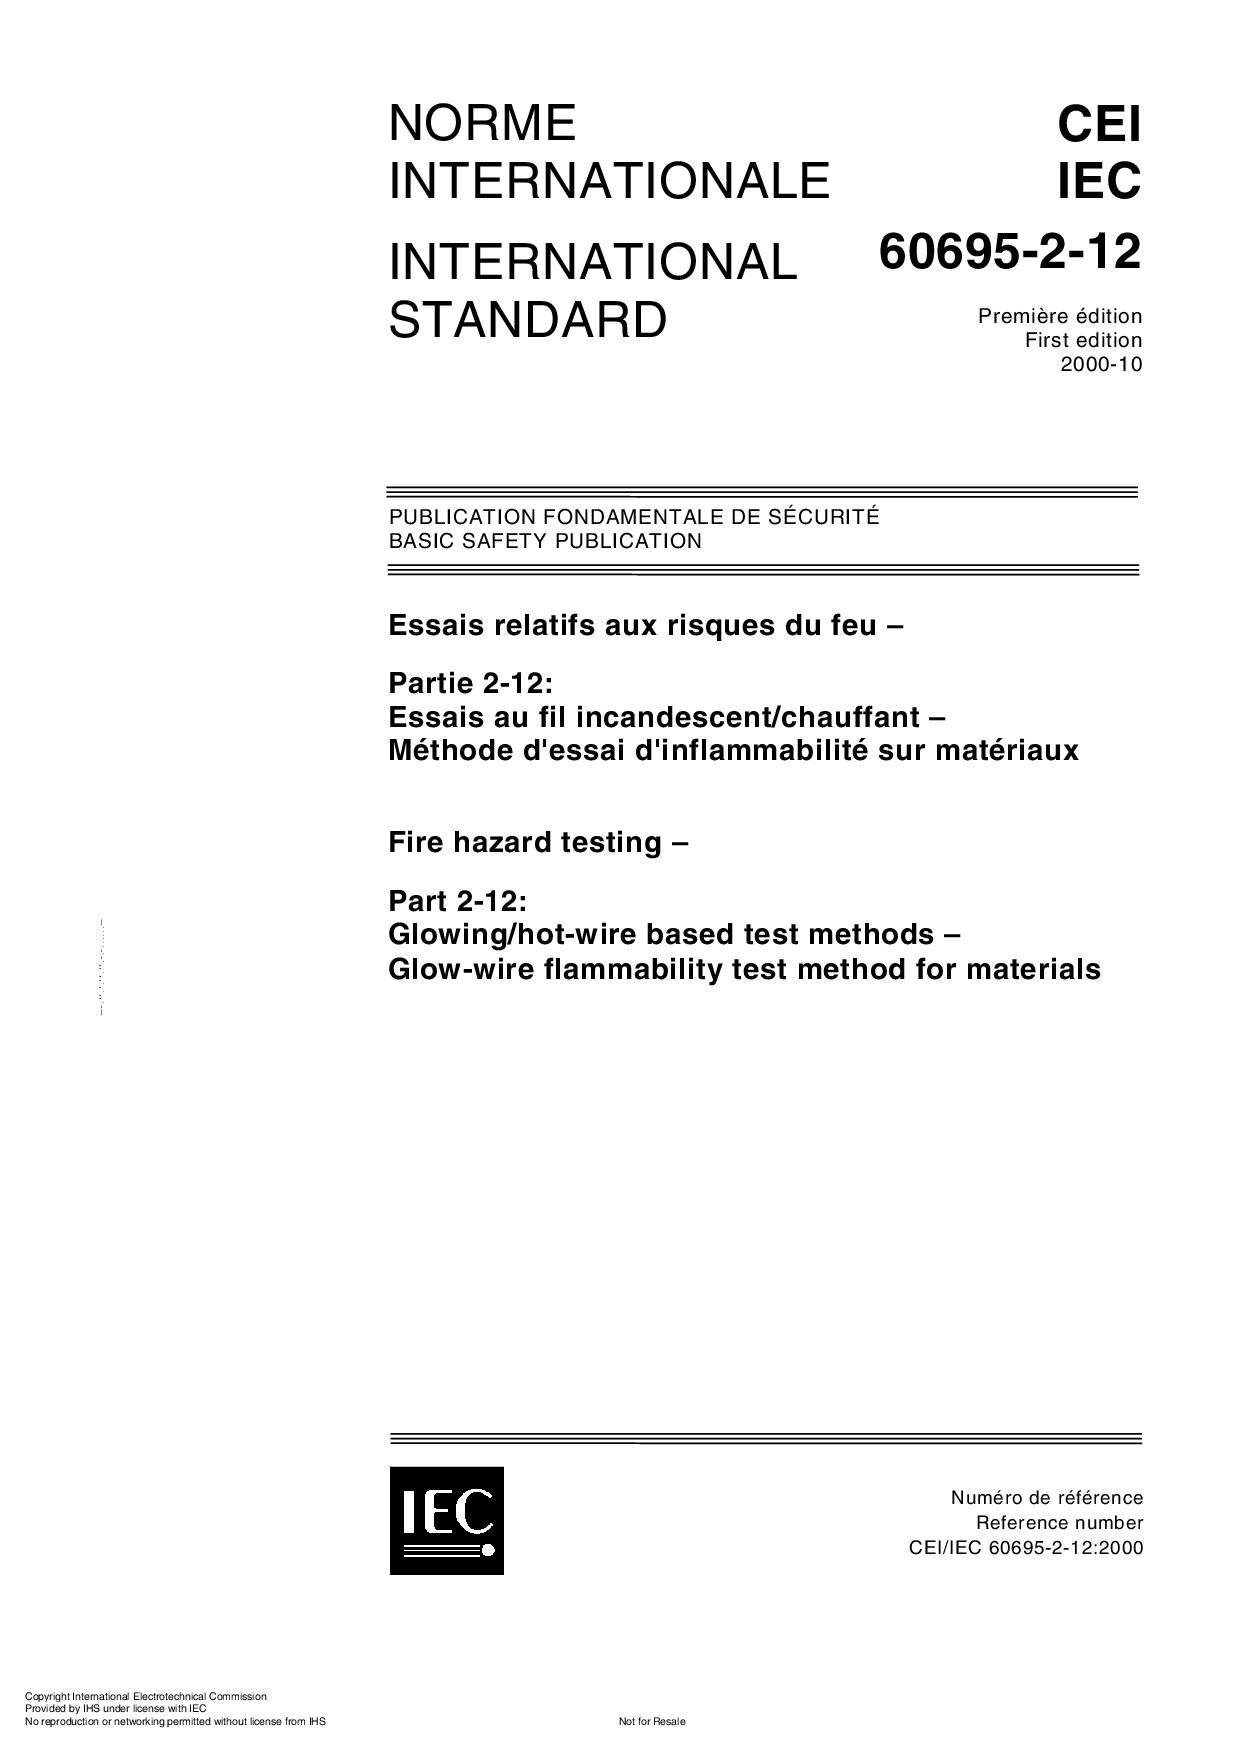 IEC 60695-2-12:2000